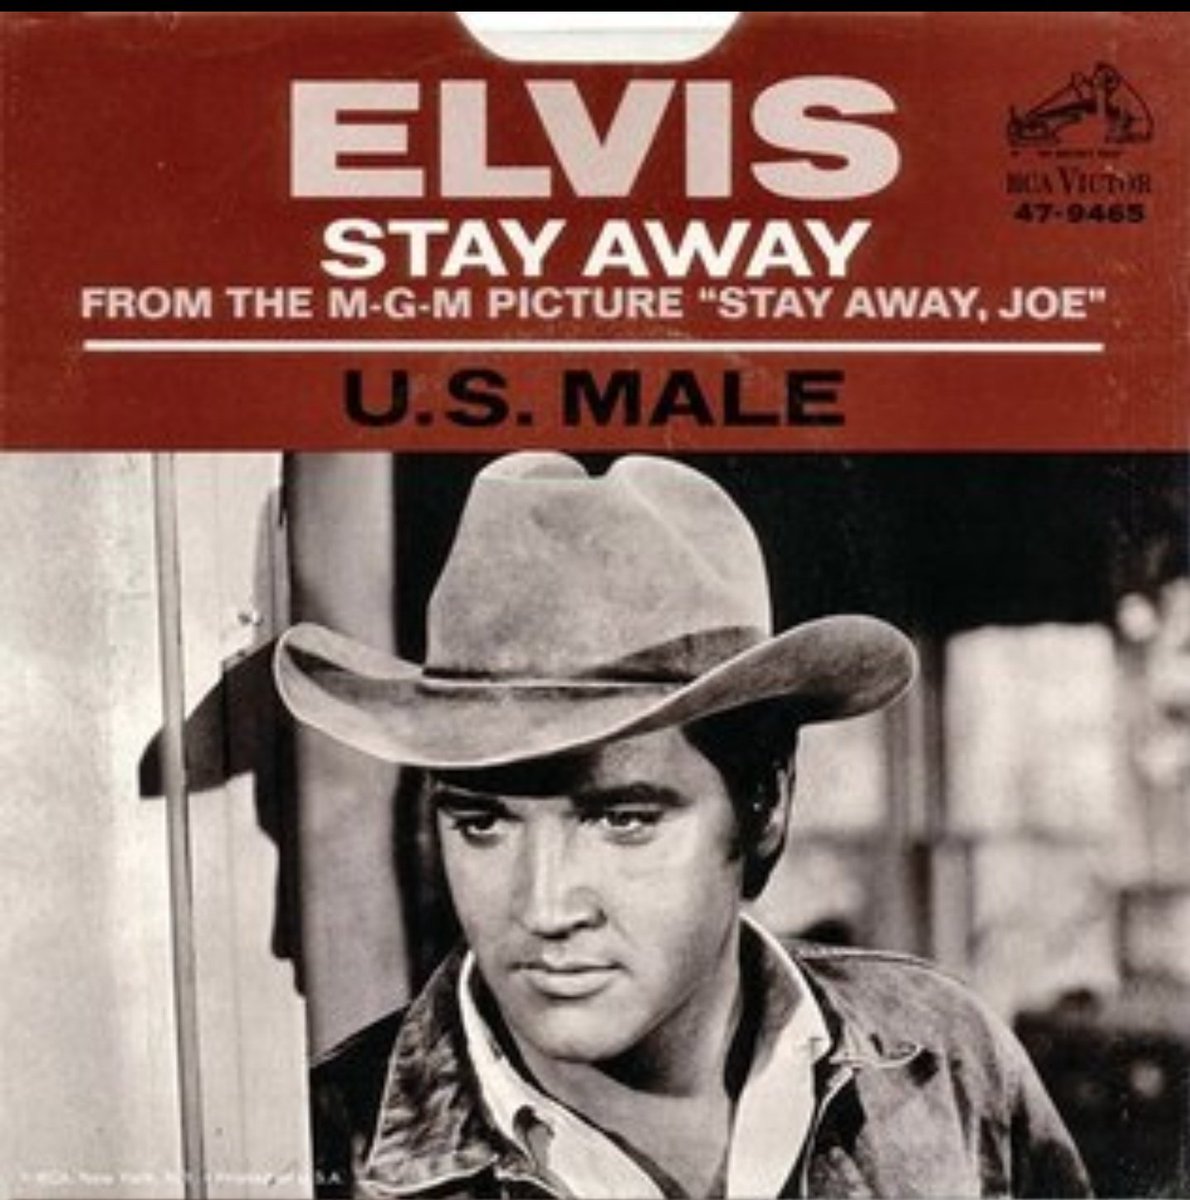 May 11 1968;
The Elvis Presley song “U.S. Male” hit #28 in the U.S.
#ElvisPresley #ElvisHistory